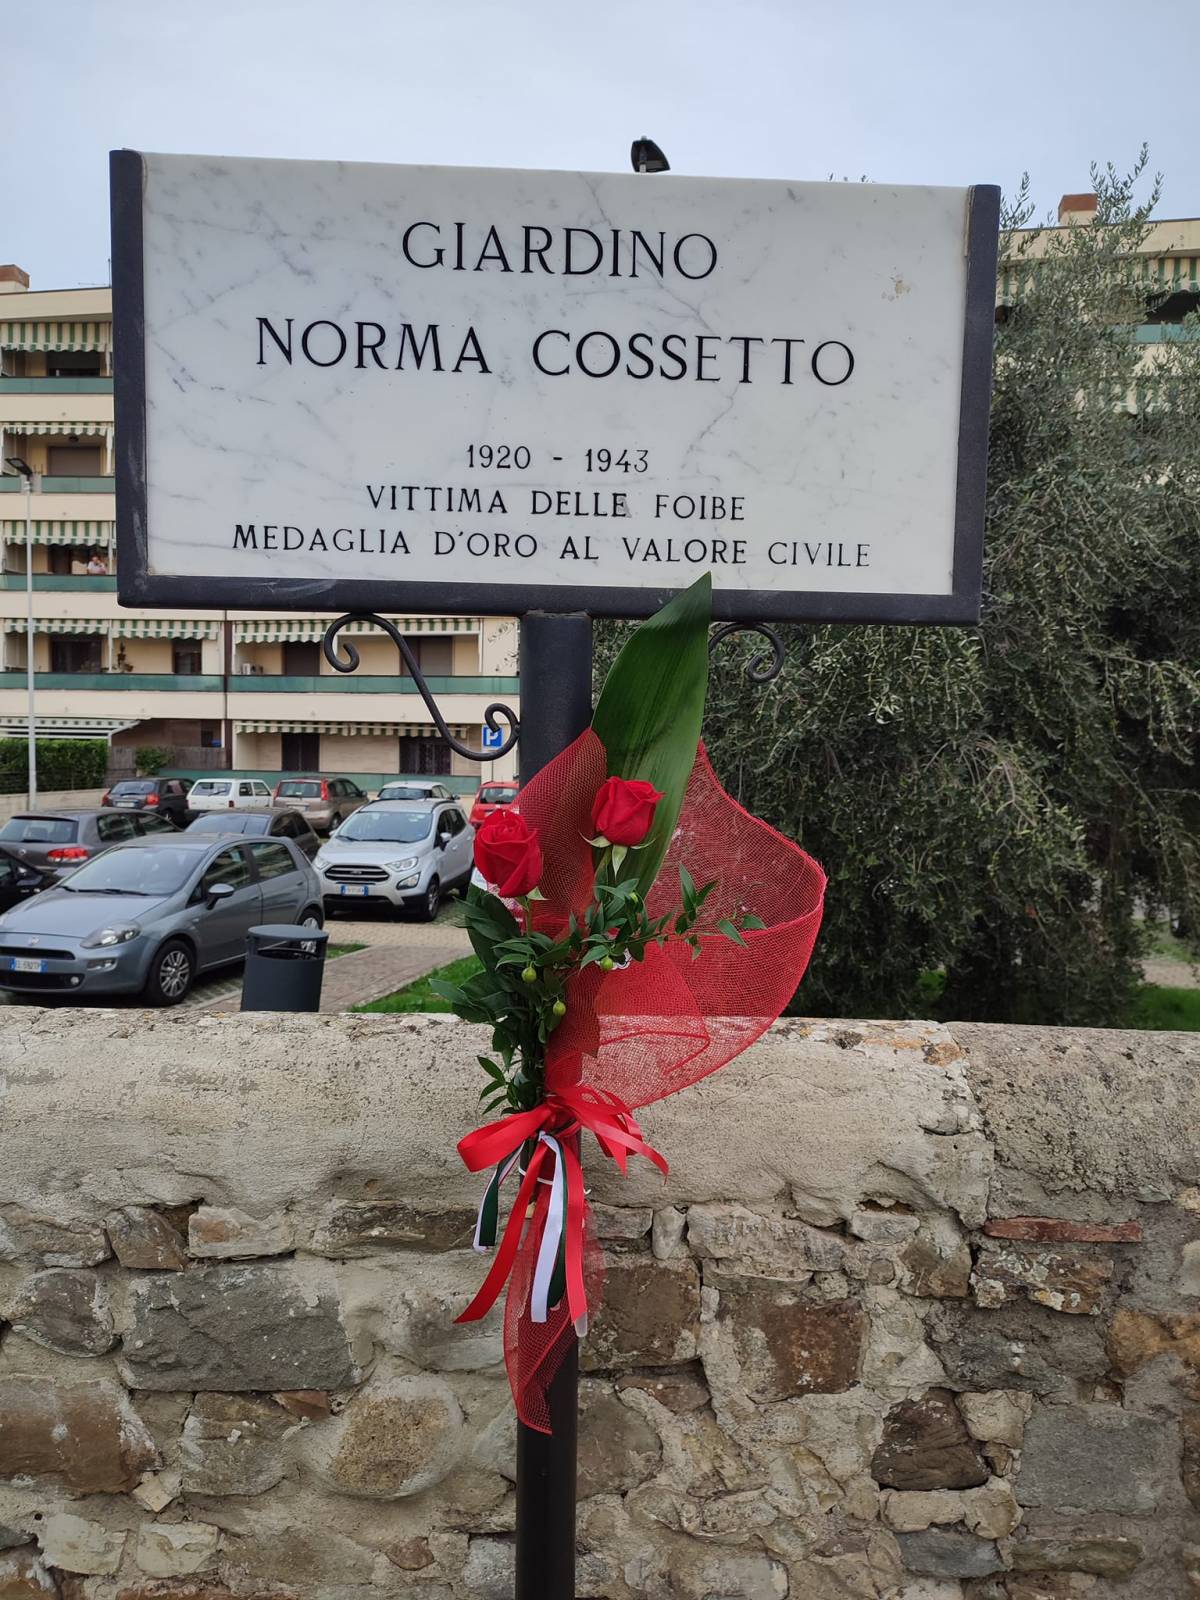 La targa del giardino Norma Cossetto a Firenze